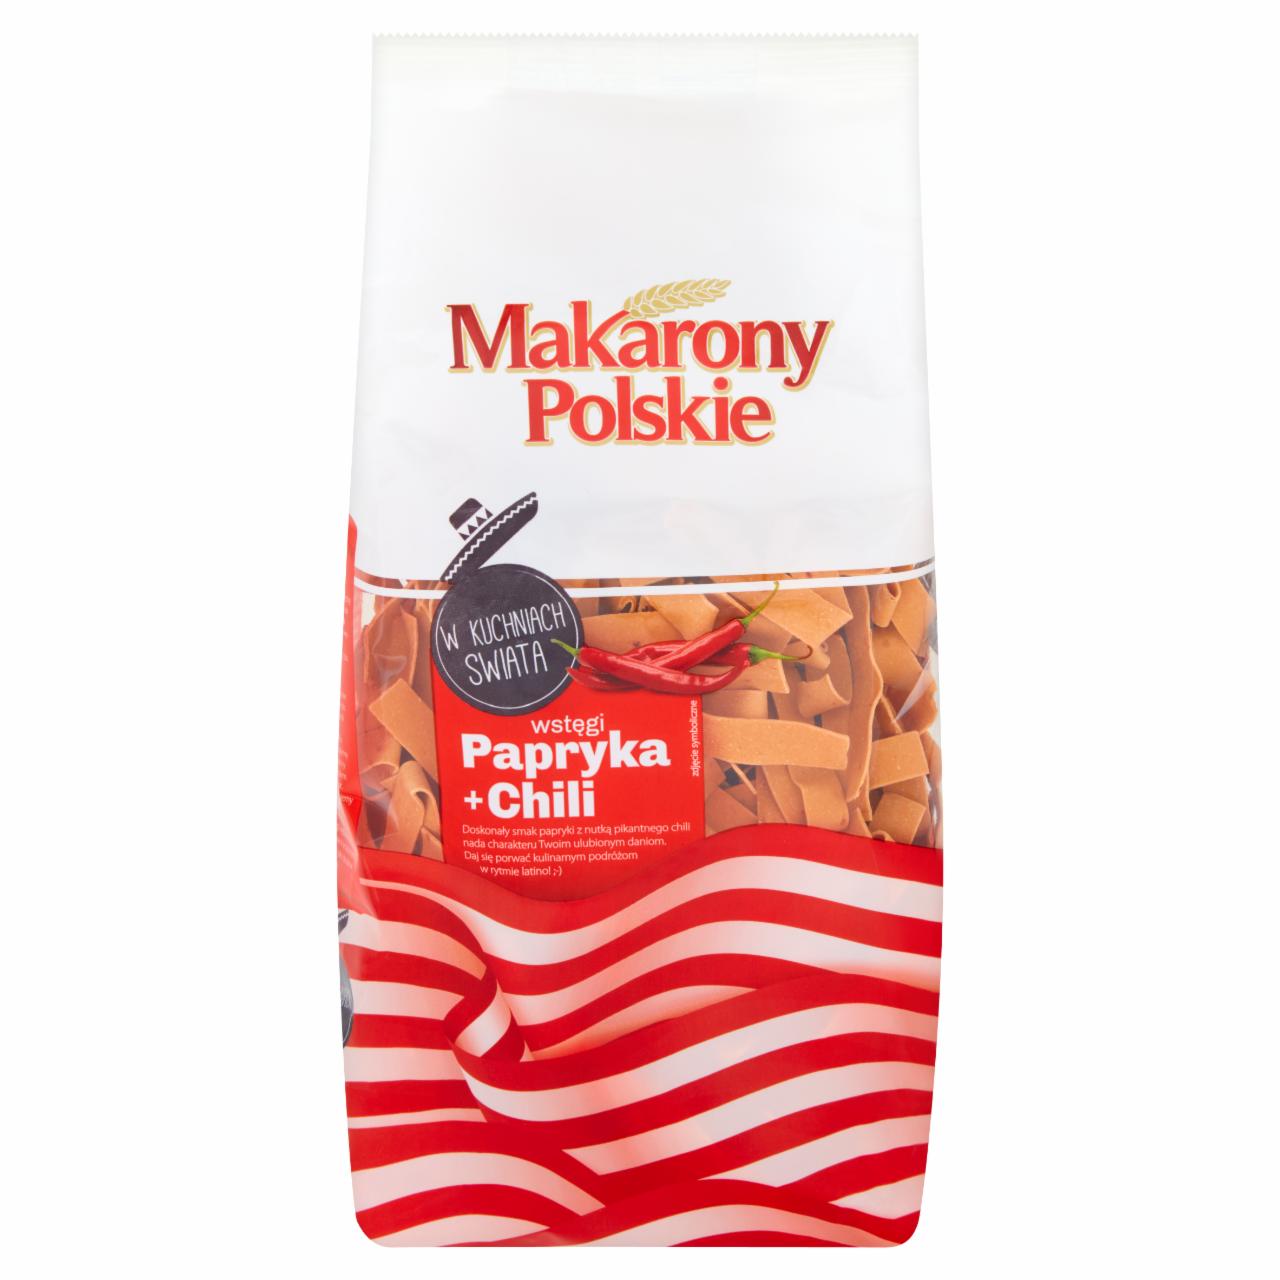 Zdjęcia - Makarony Polskie Makaron wstęgi papryka + chili 400 g